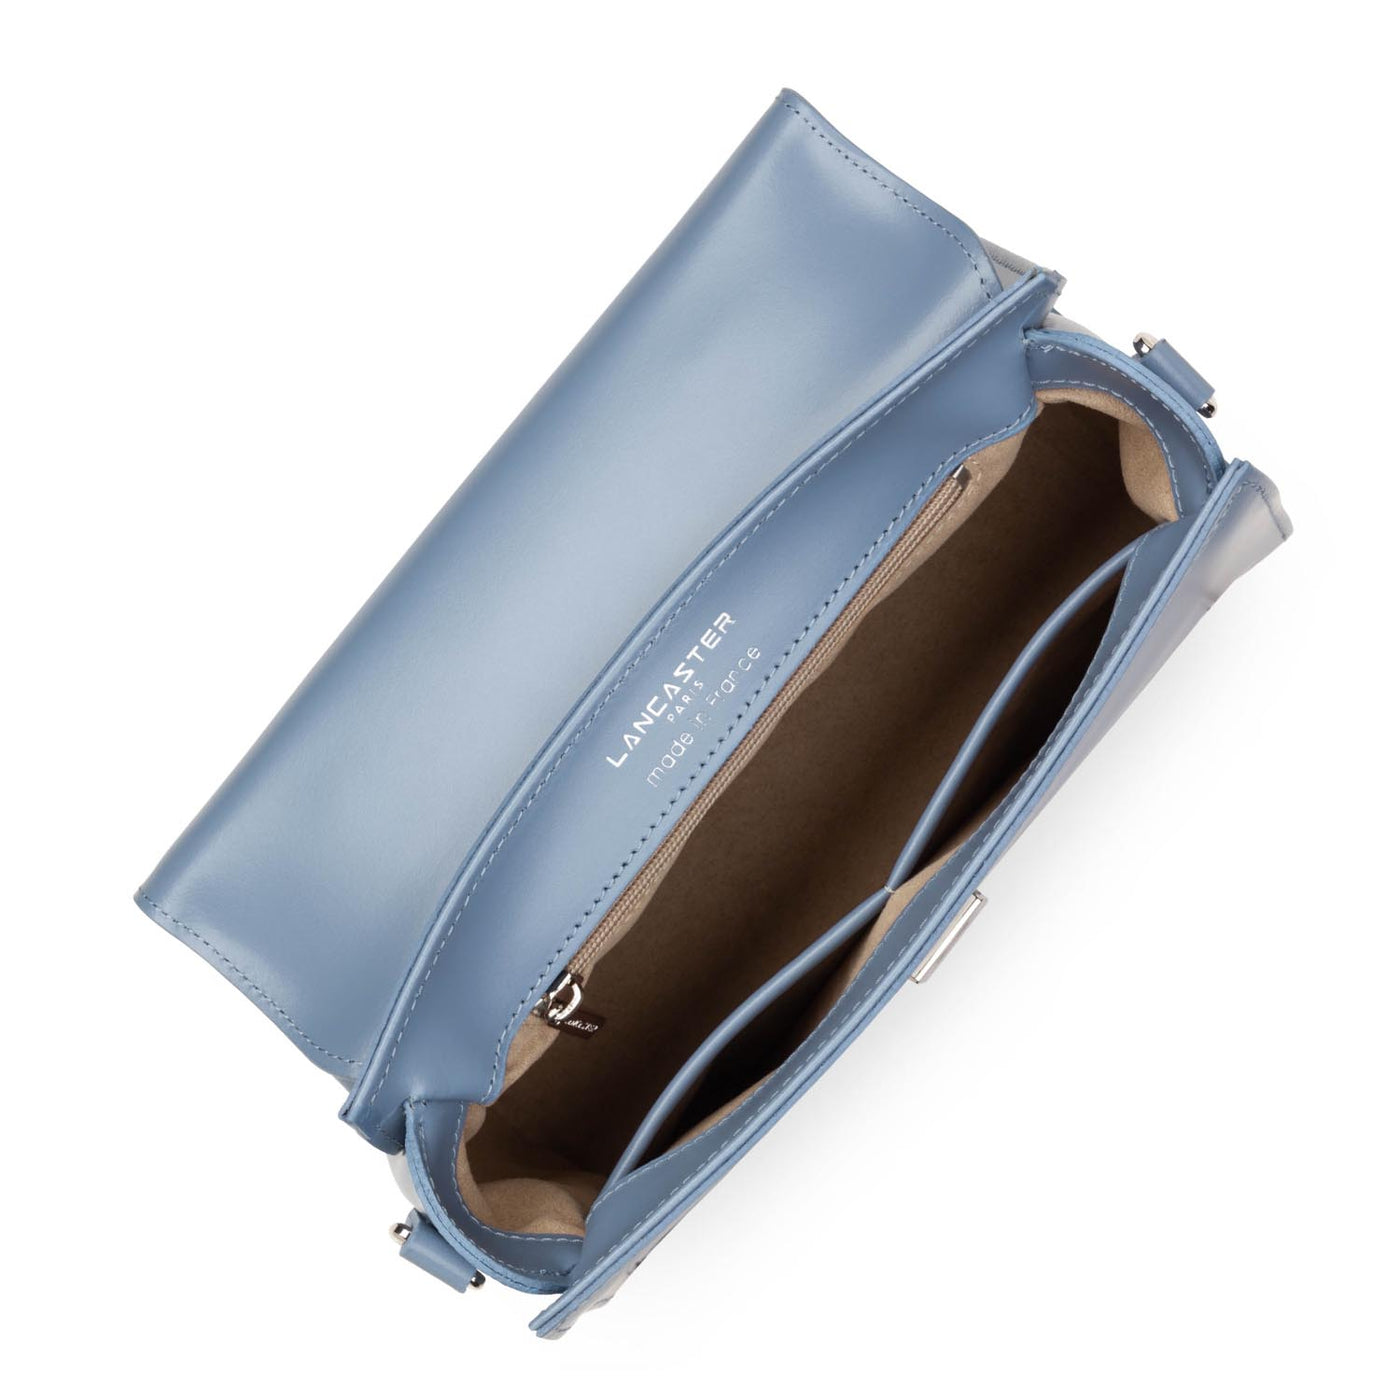 sac à main - suave even #couleur_bleu-stone